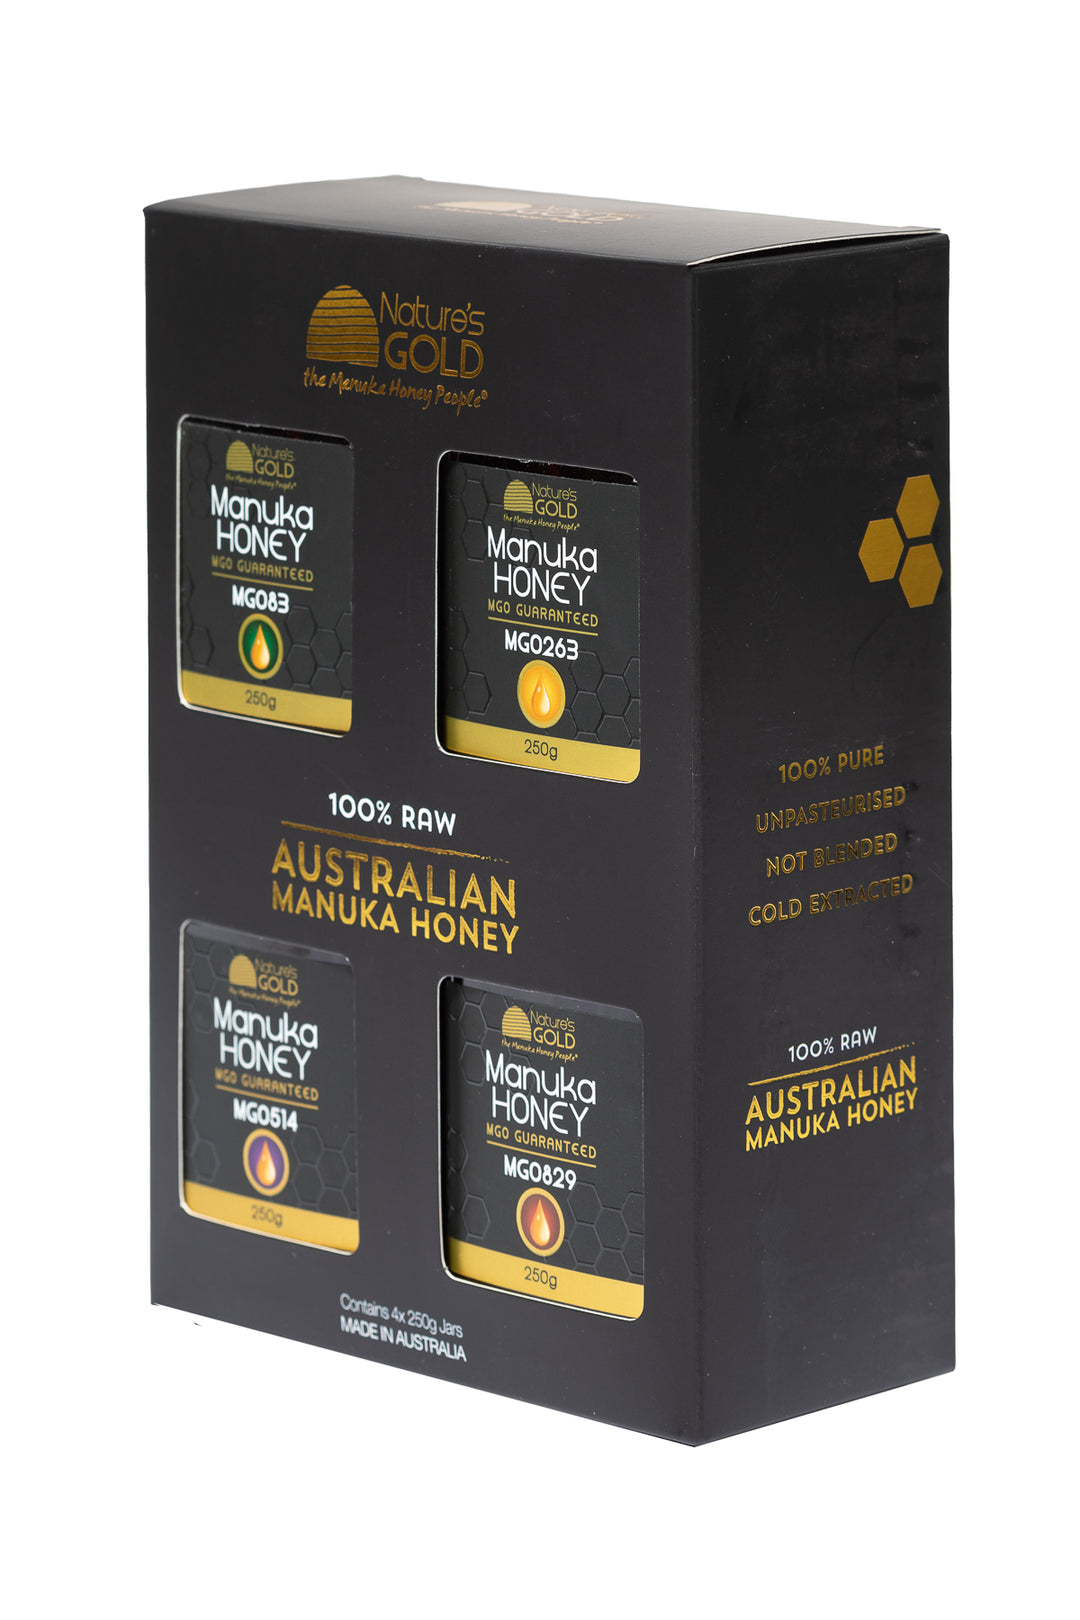 선물 팩 -Australian Manuka Honey X MGO 83, 263, 514 및 829